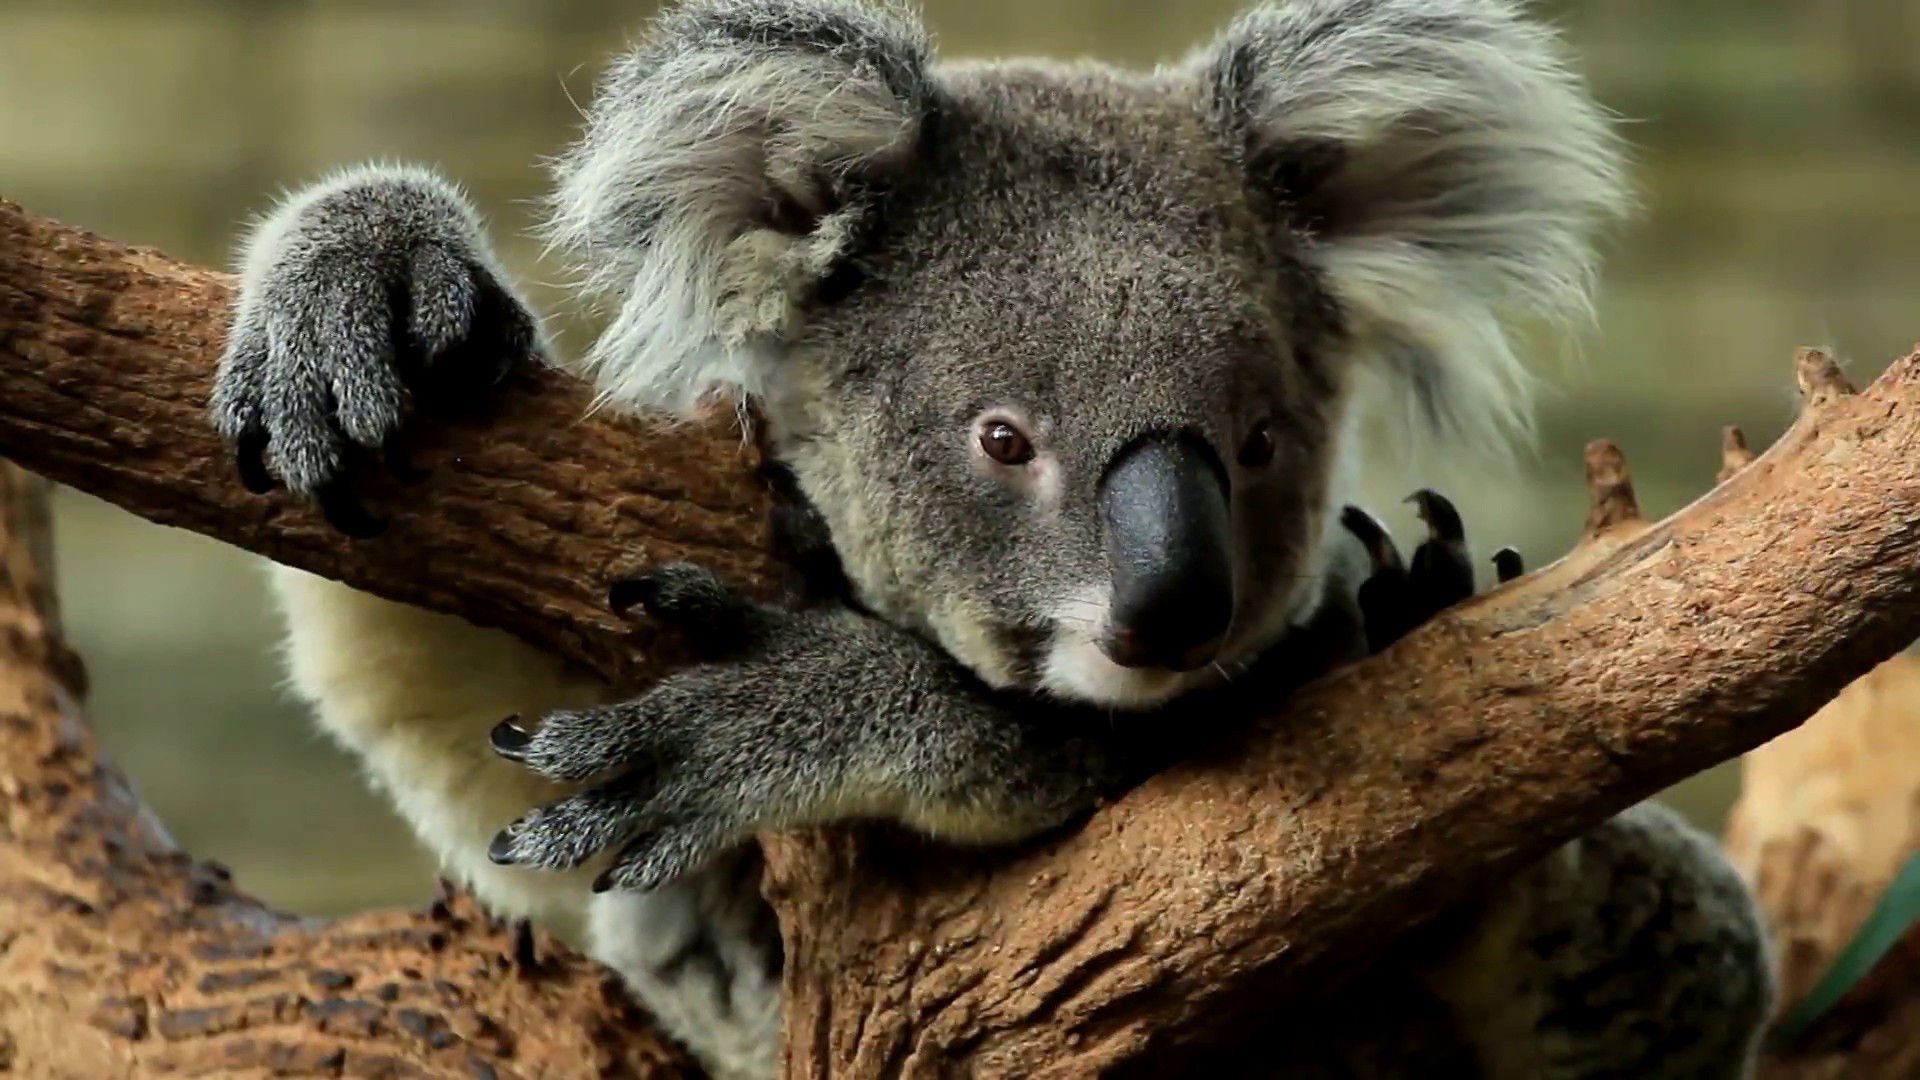 Koalas - Bush Heritage Australia